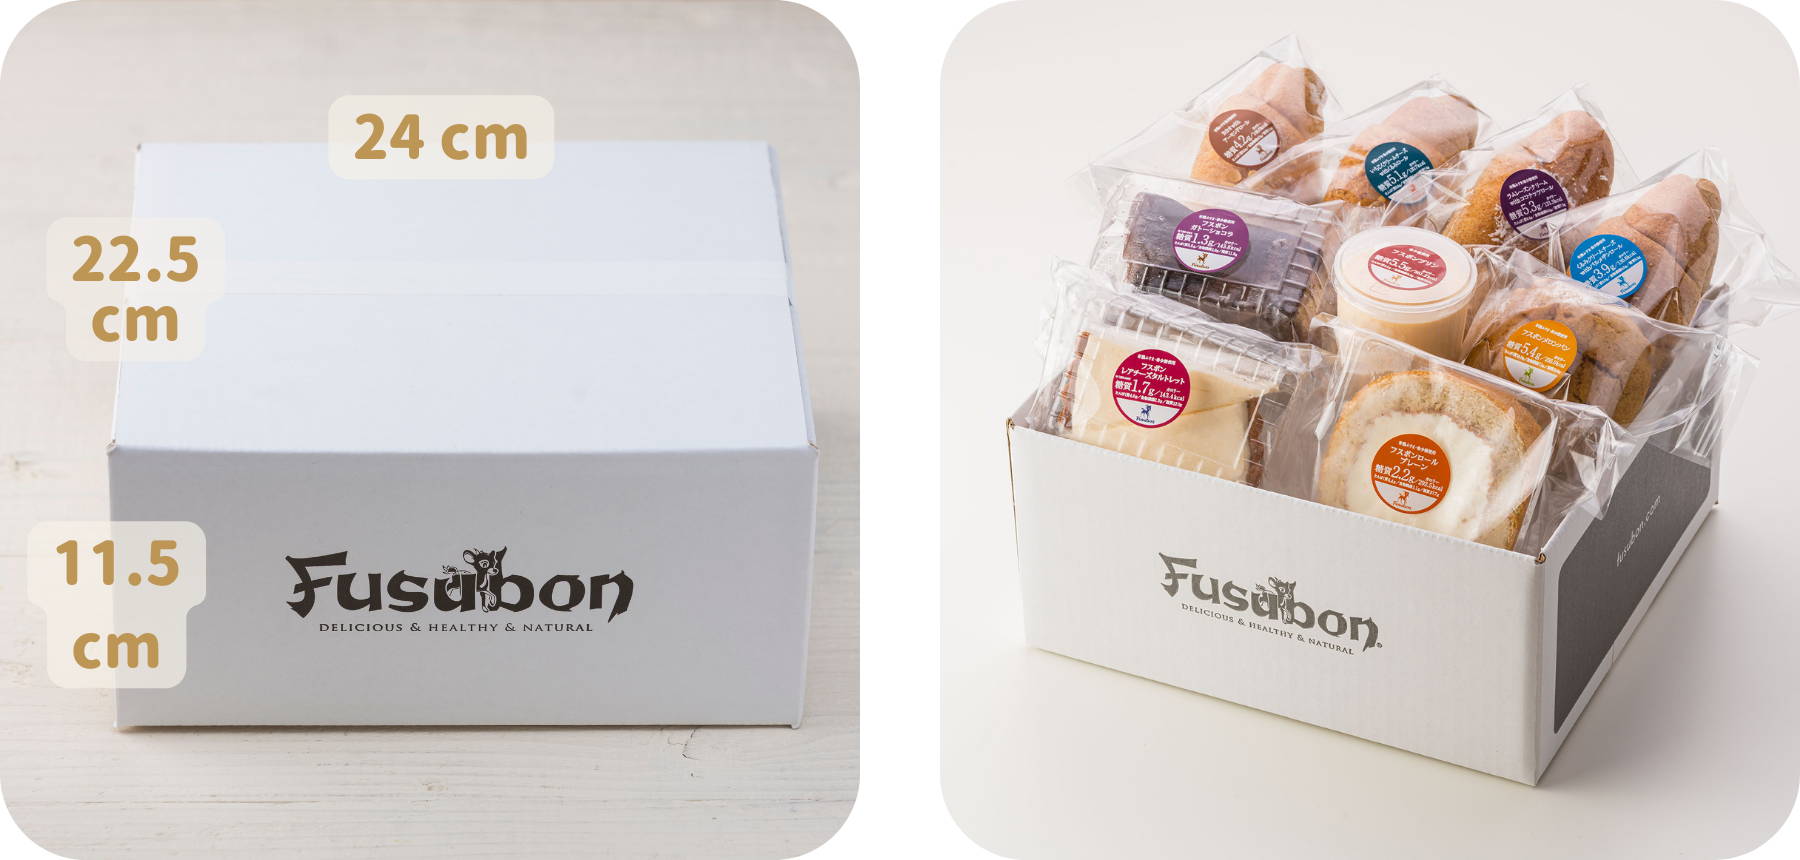 低糖質パンと糖質制限おやつの専門店・フスボンのお届けの際の荷姿のイメージ画像。